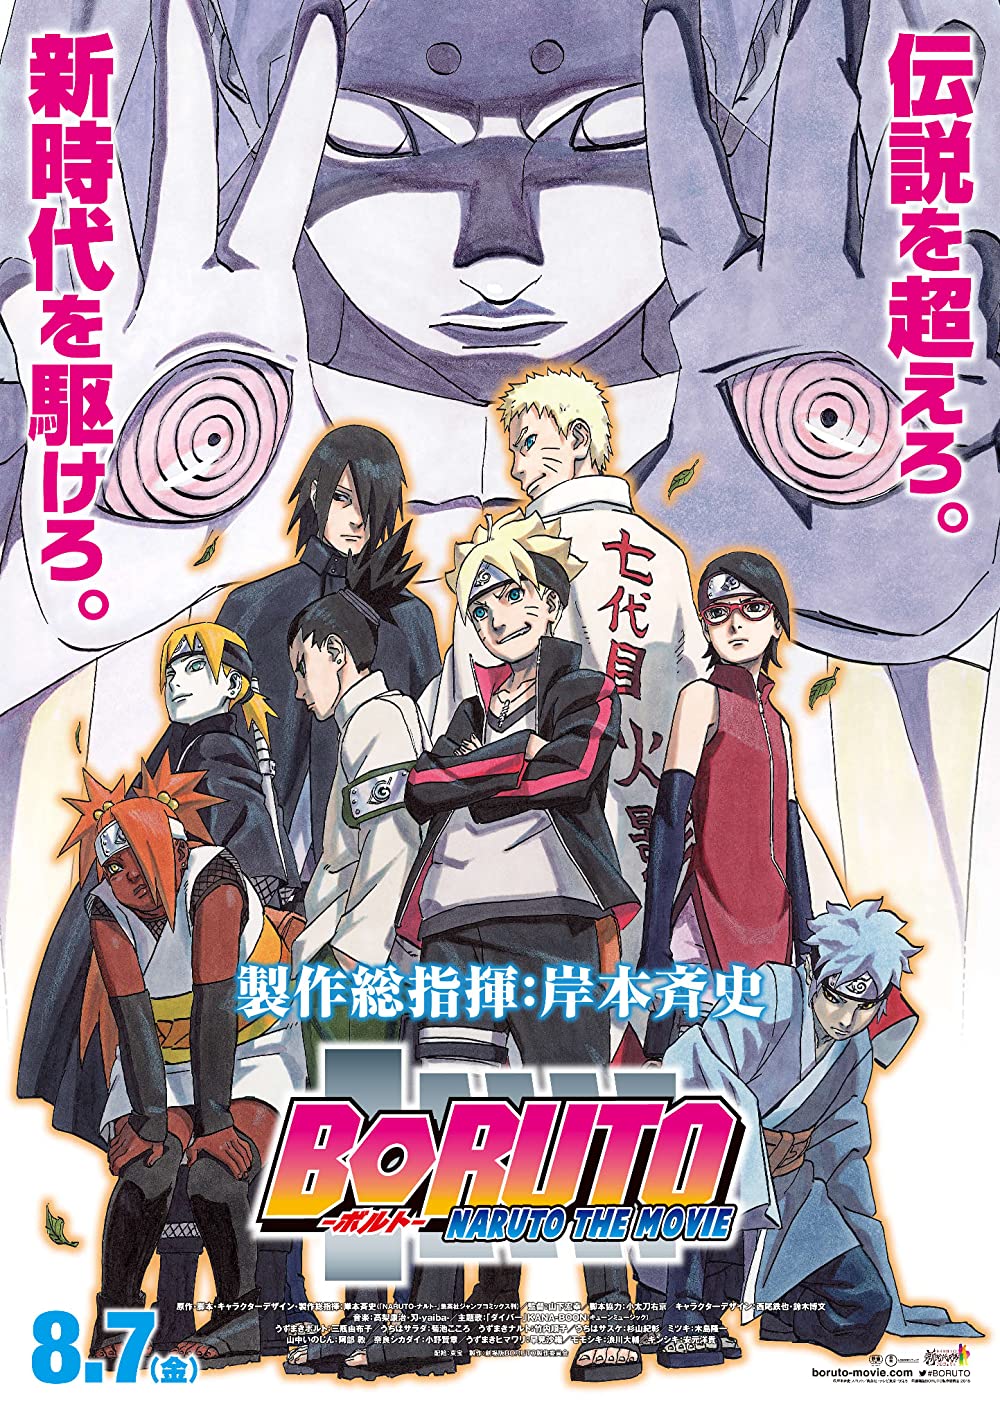 Filmbeschreibung zu Boruto: Naruto - The Movie